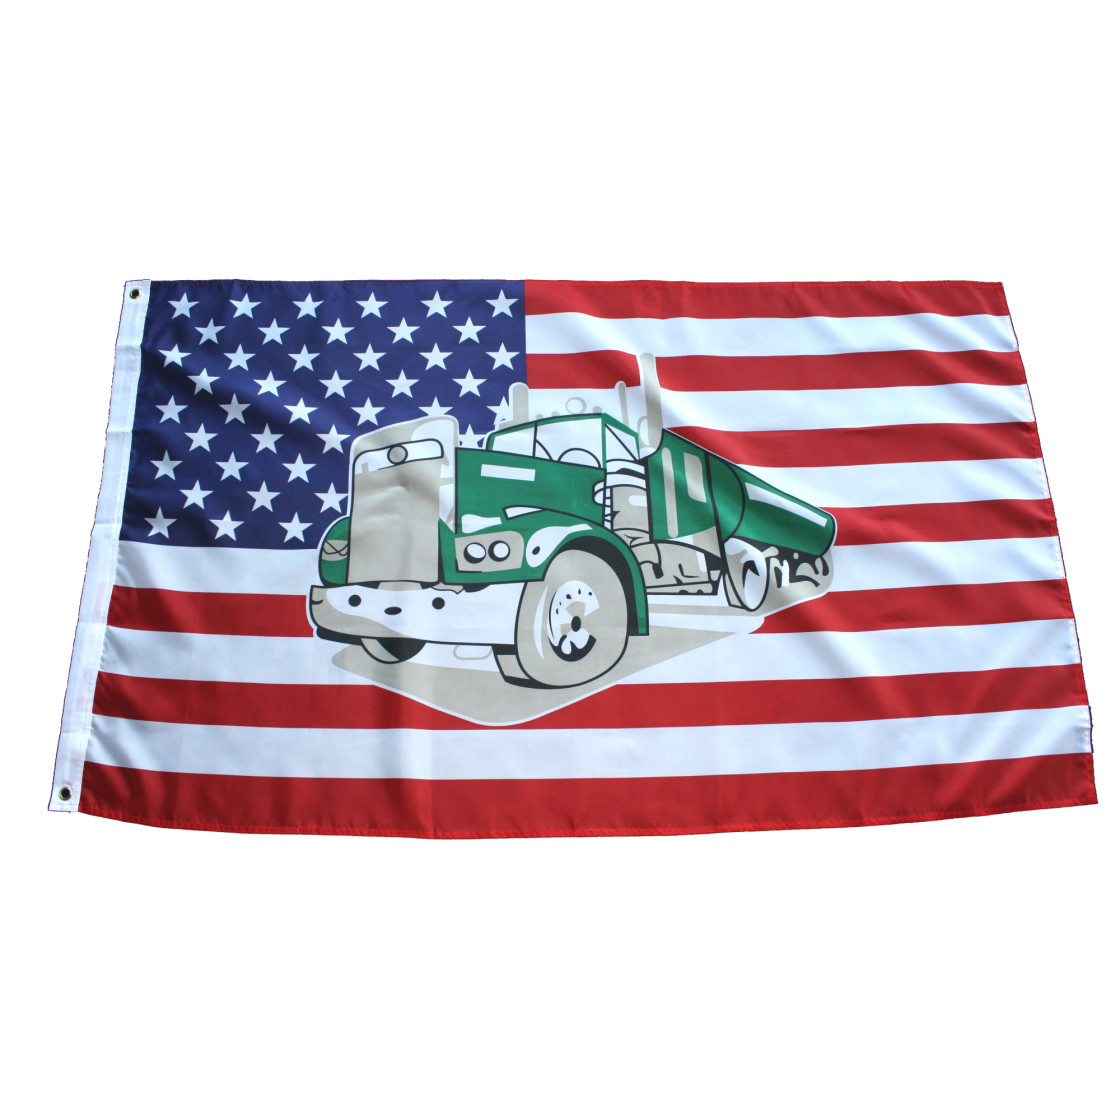 Bike Flaggen Amerika 150x90cm USA Flagge Motivflagge Fahne mit Truck Adler 